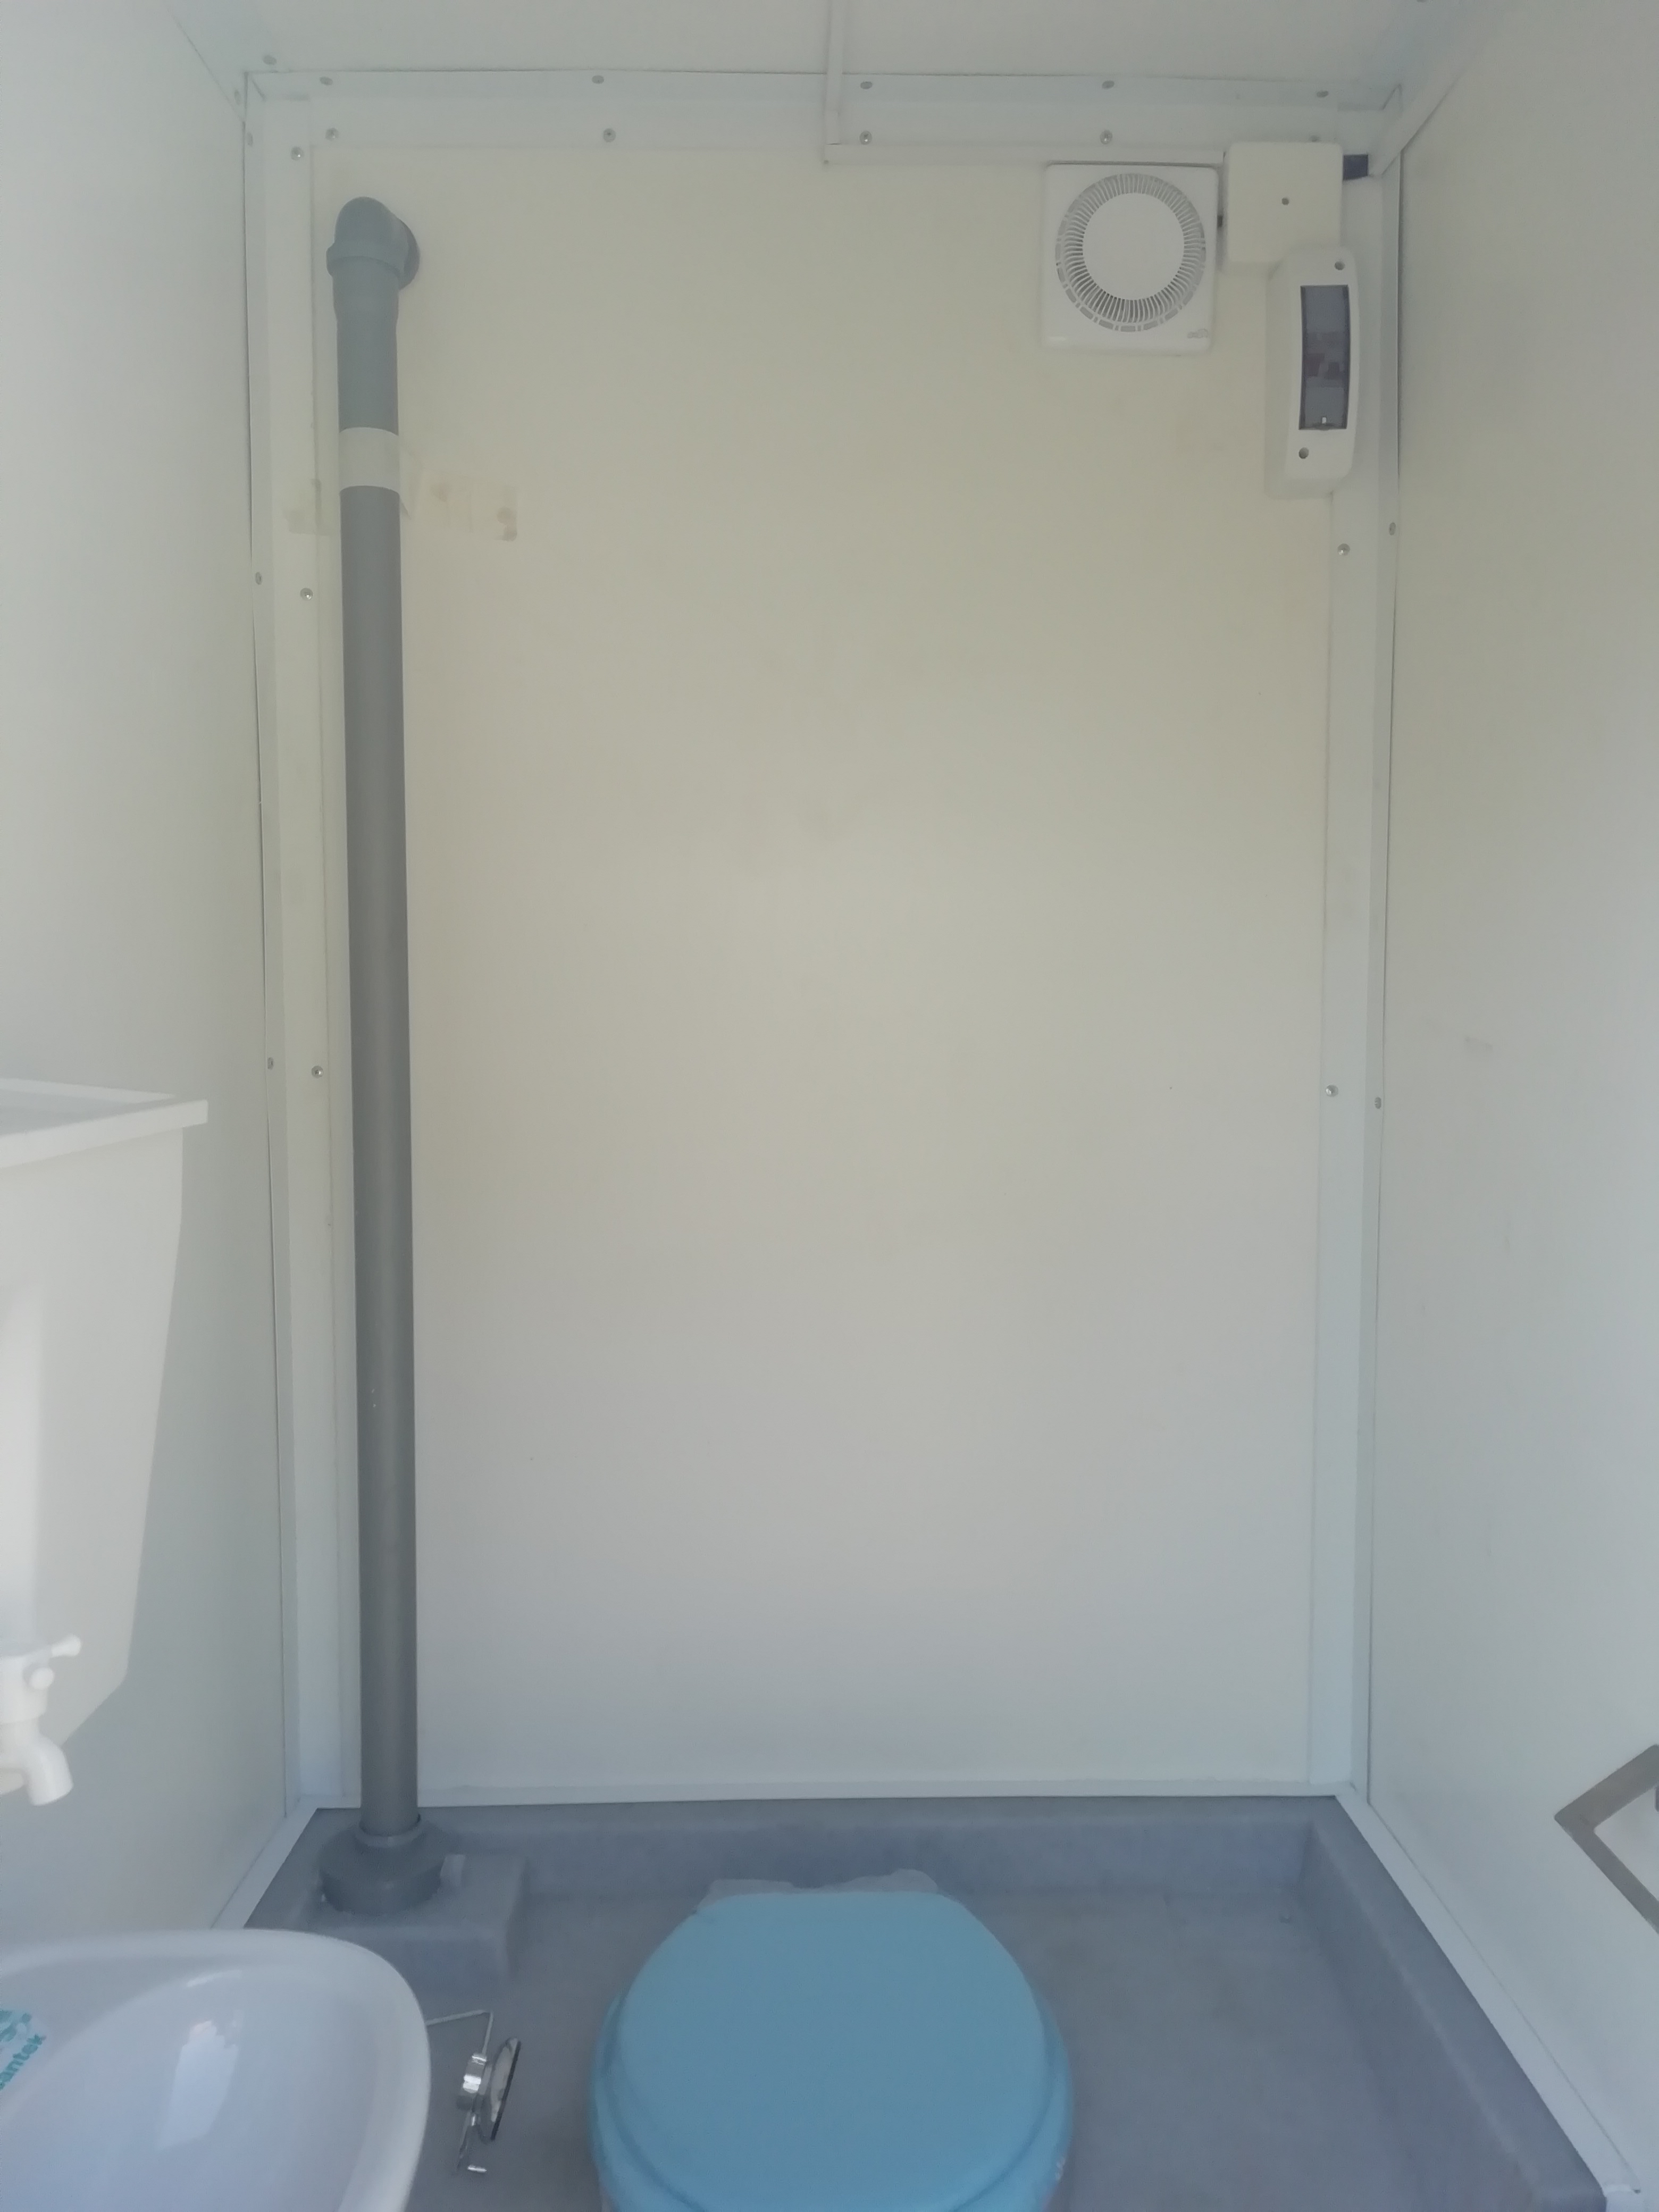 Теплая туалетная кабина Европа (автономная)